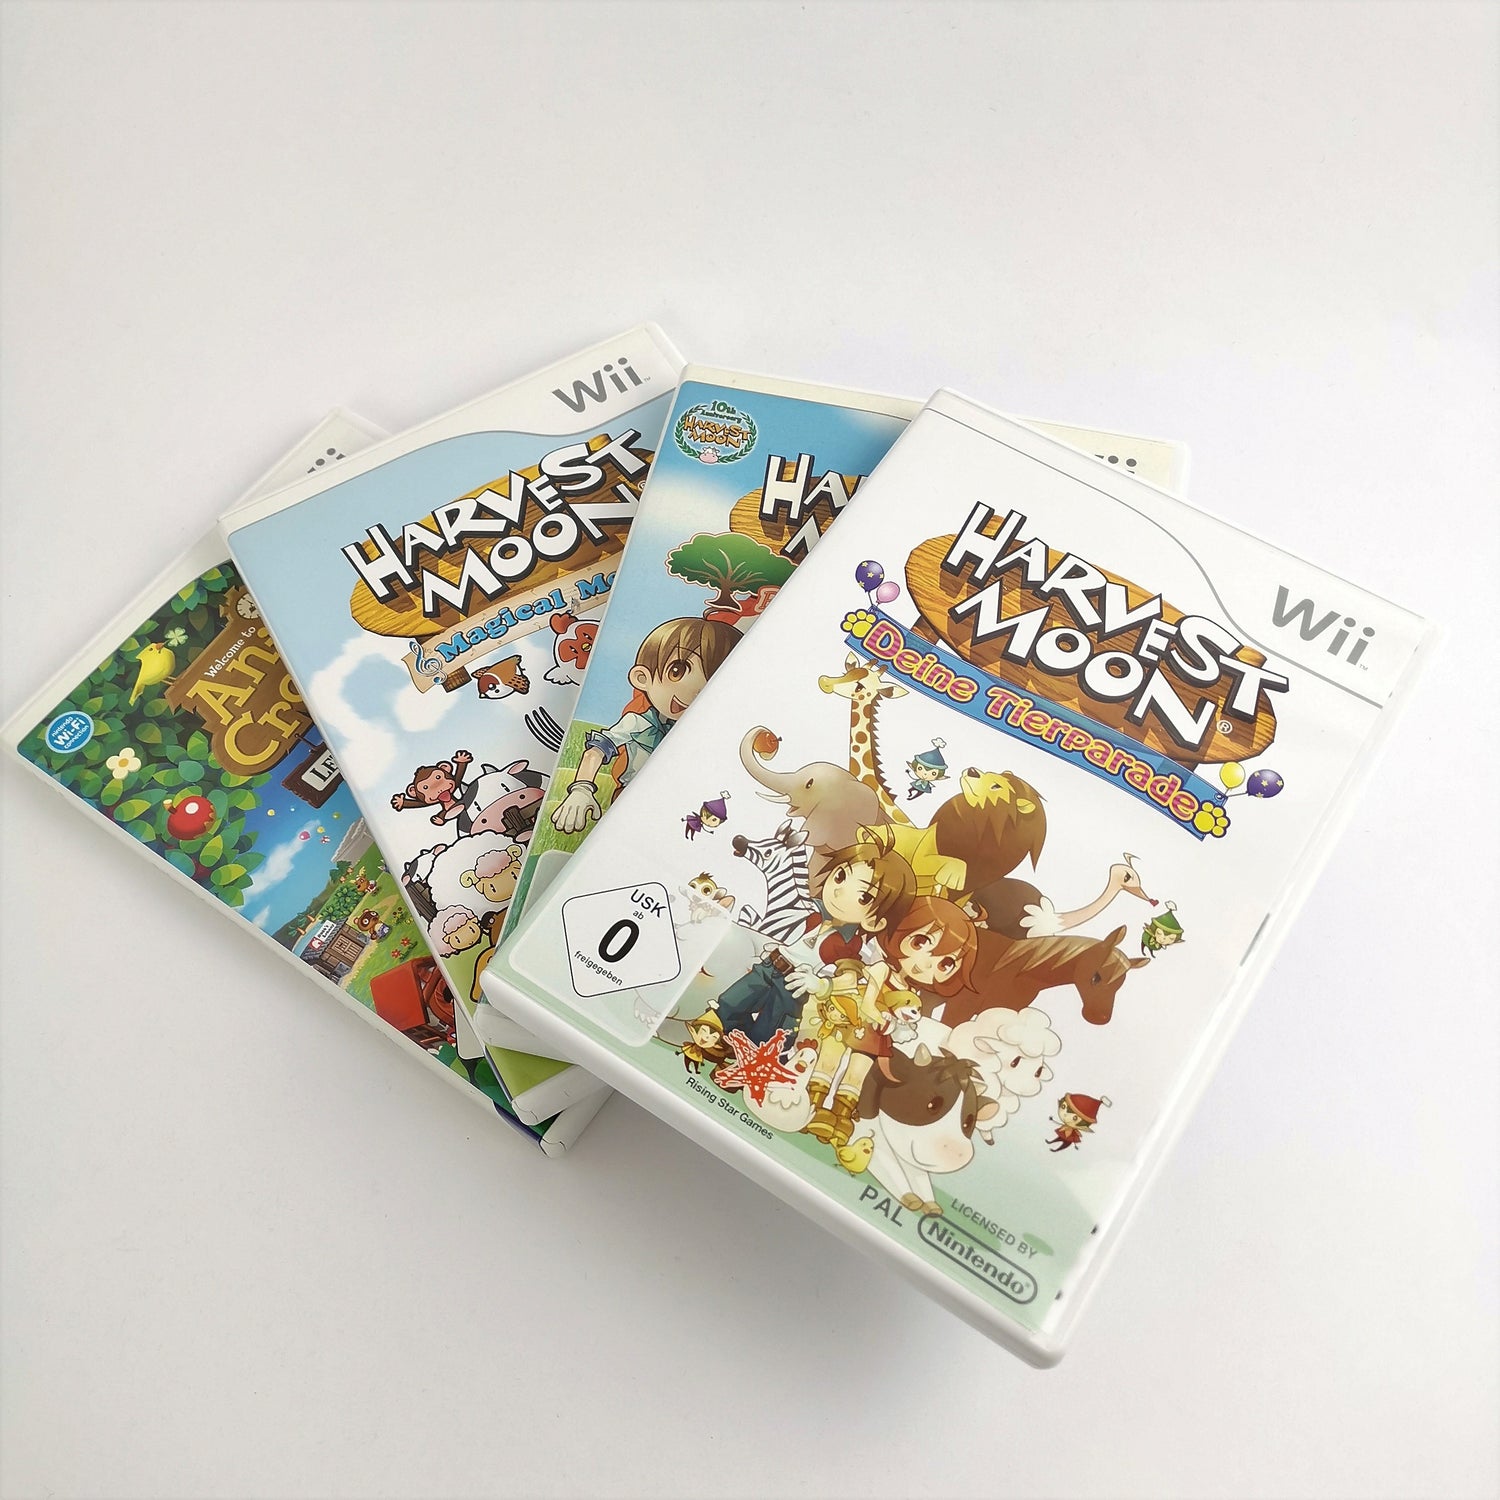 Nintendo Wii Spiele Bundle : Animal Crossing & 3 verschiedene Harvest Moon Games